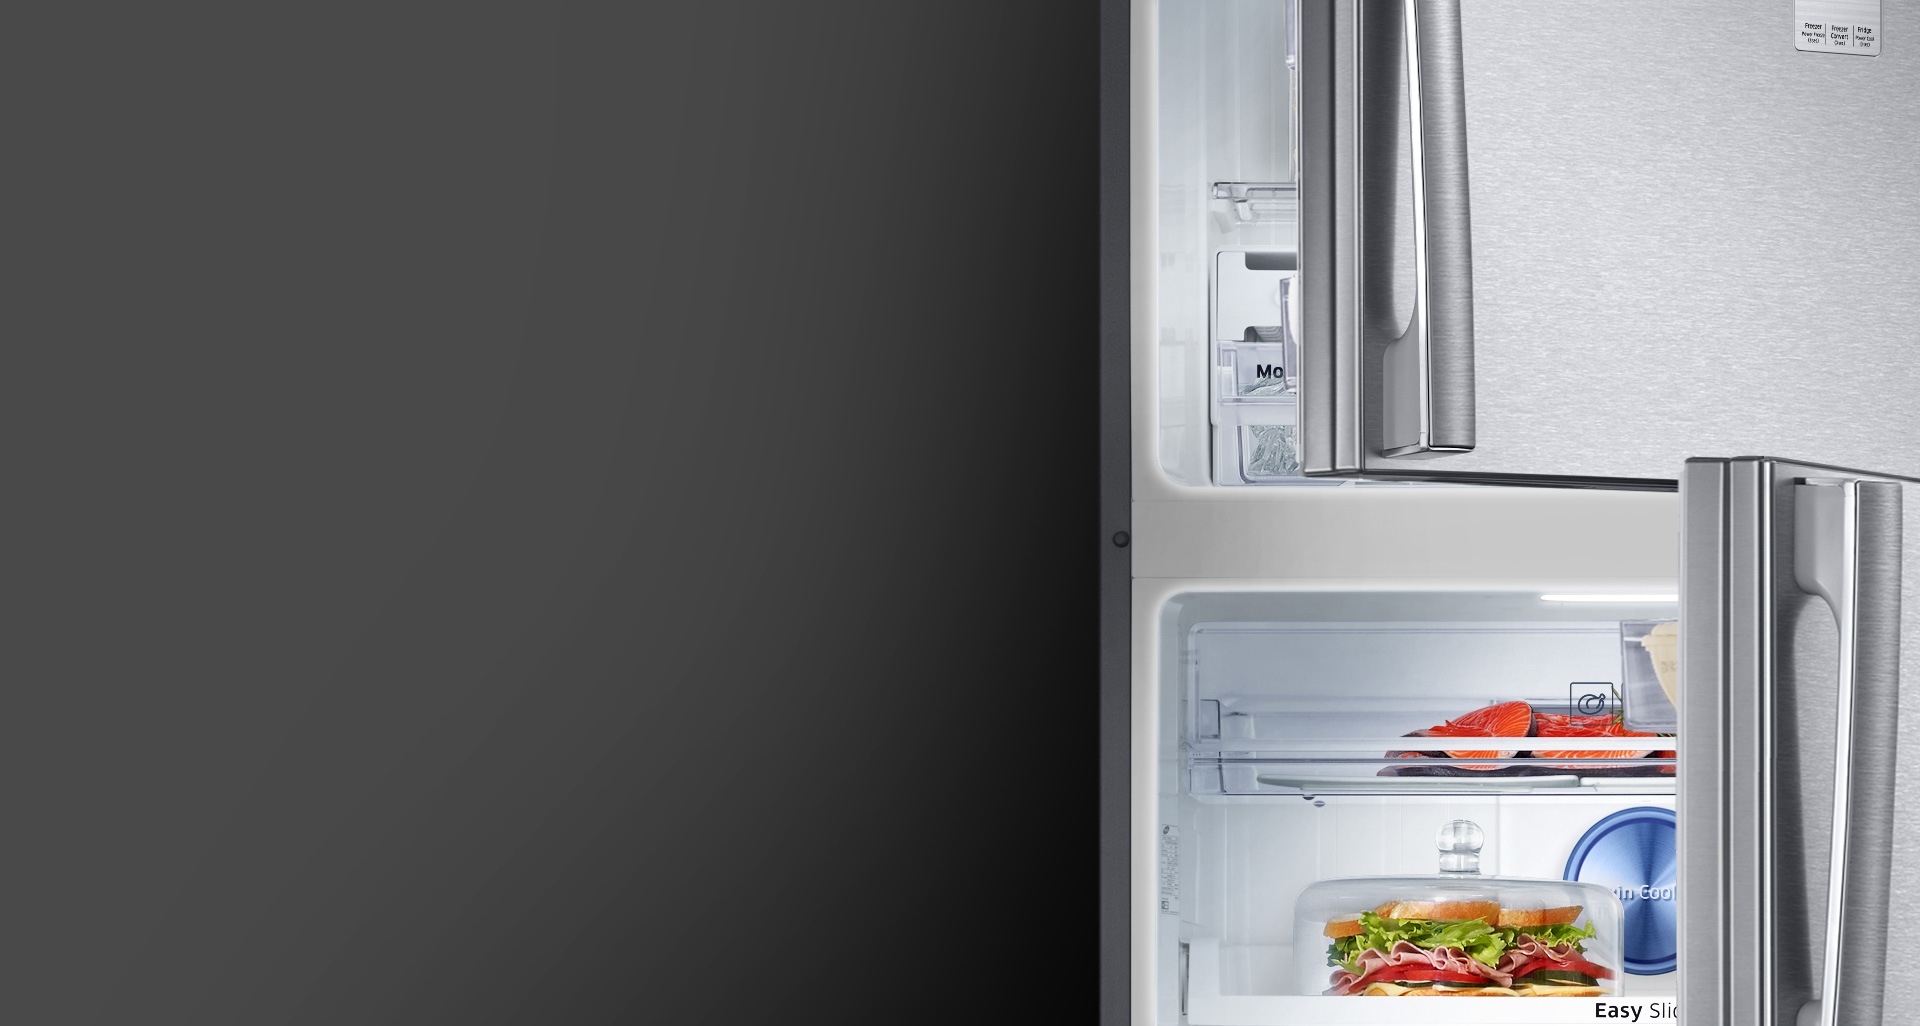 Δείτε καθαρά τα πάντα μέσα στο ψυγείο σας